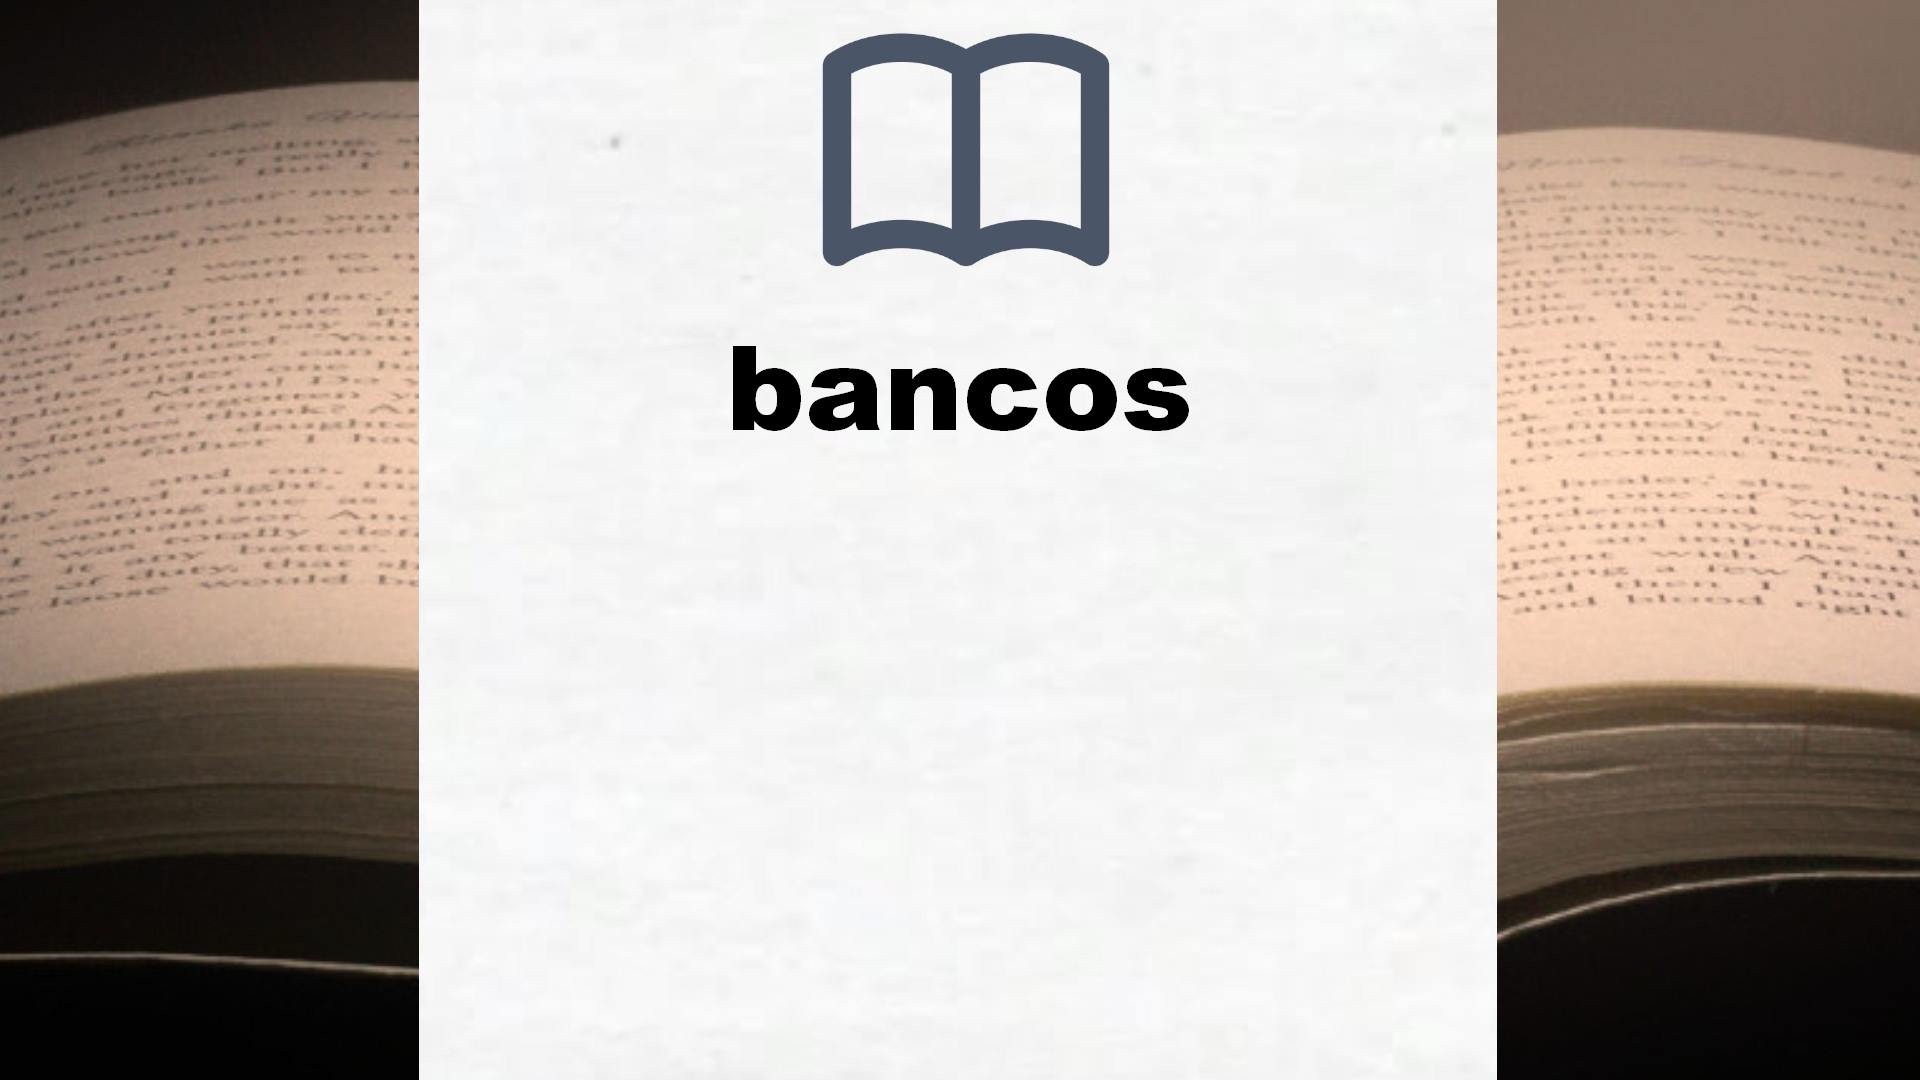 Libros sobre bancos